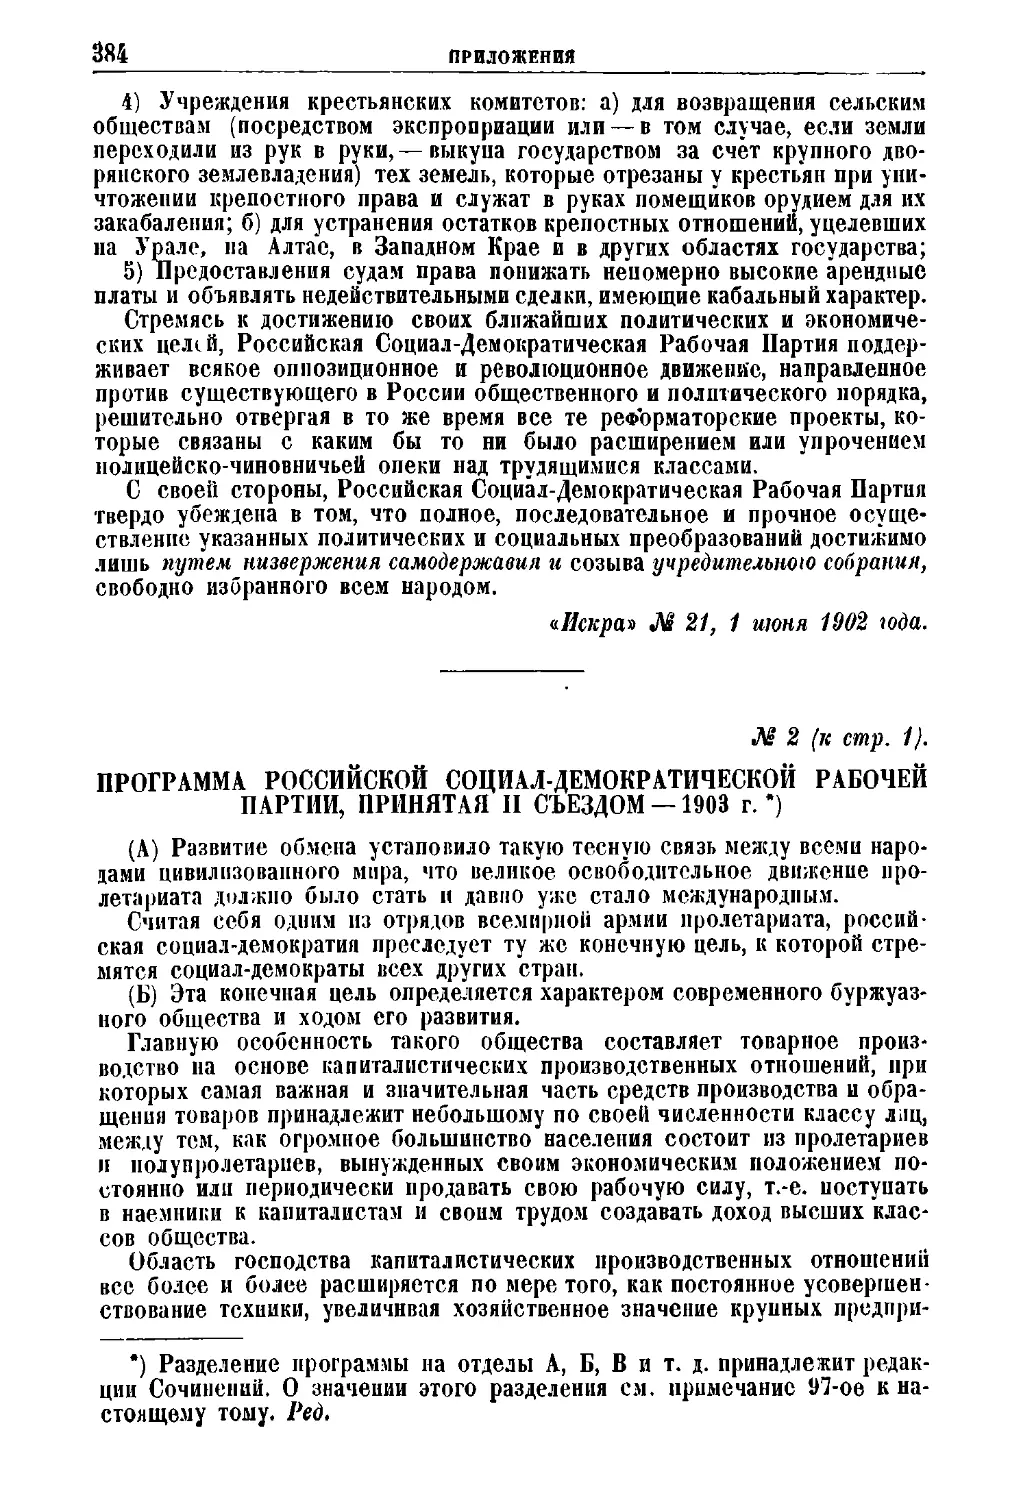 № 2. Программа Россипской Социал-Демократической Рабочей Партии, принятая II съездом — 1903 г.